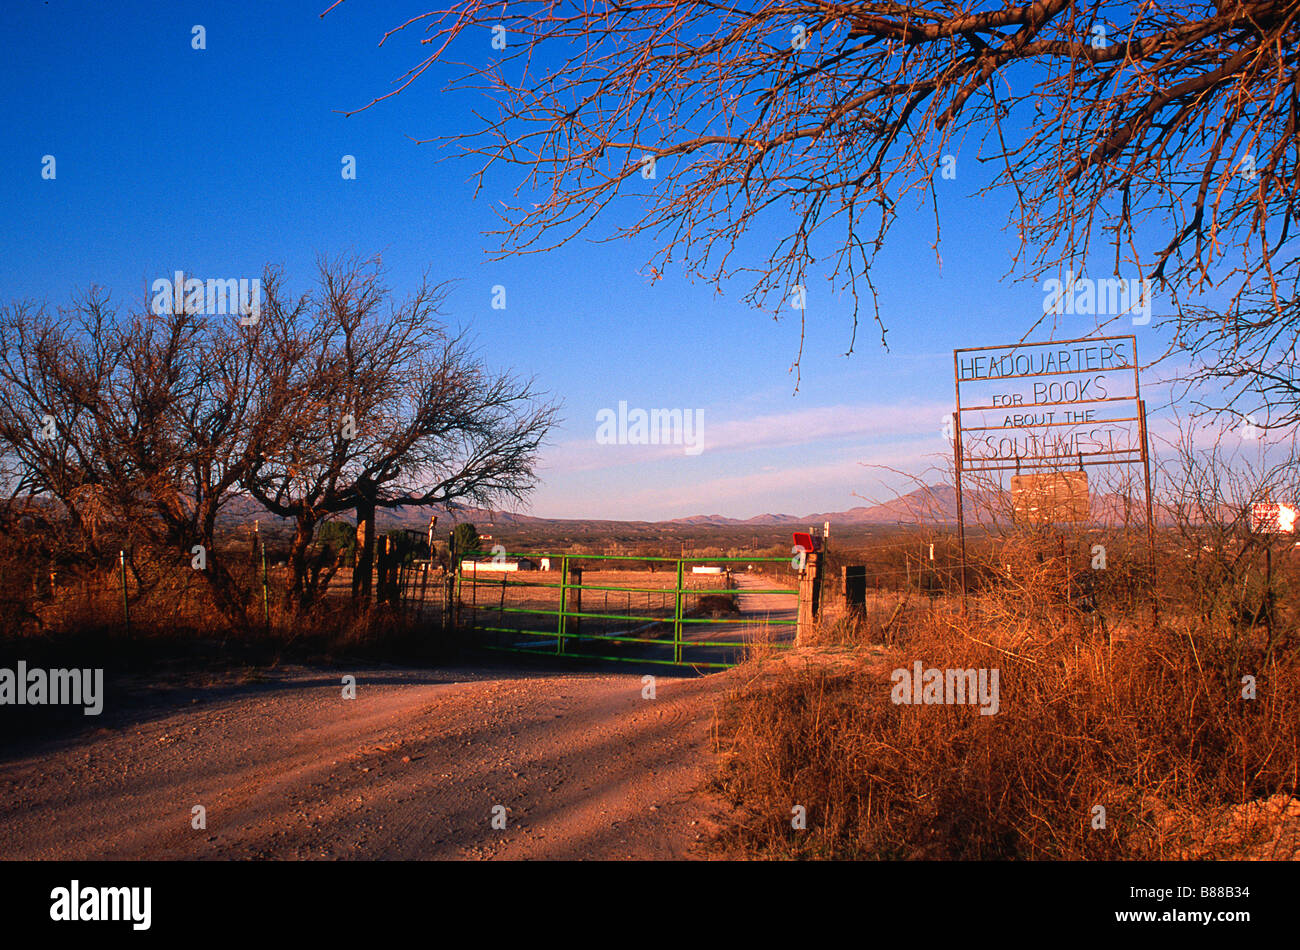 Strada e gate in canti vento Bookstore e ranch di bestiame- quartier generale per i libri sul sud-ovest, Benson, AZ Foto Stock